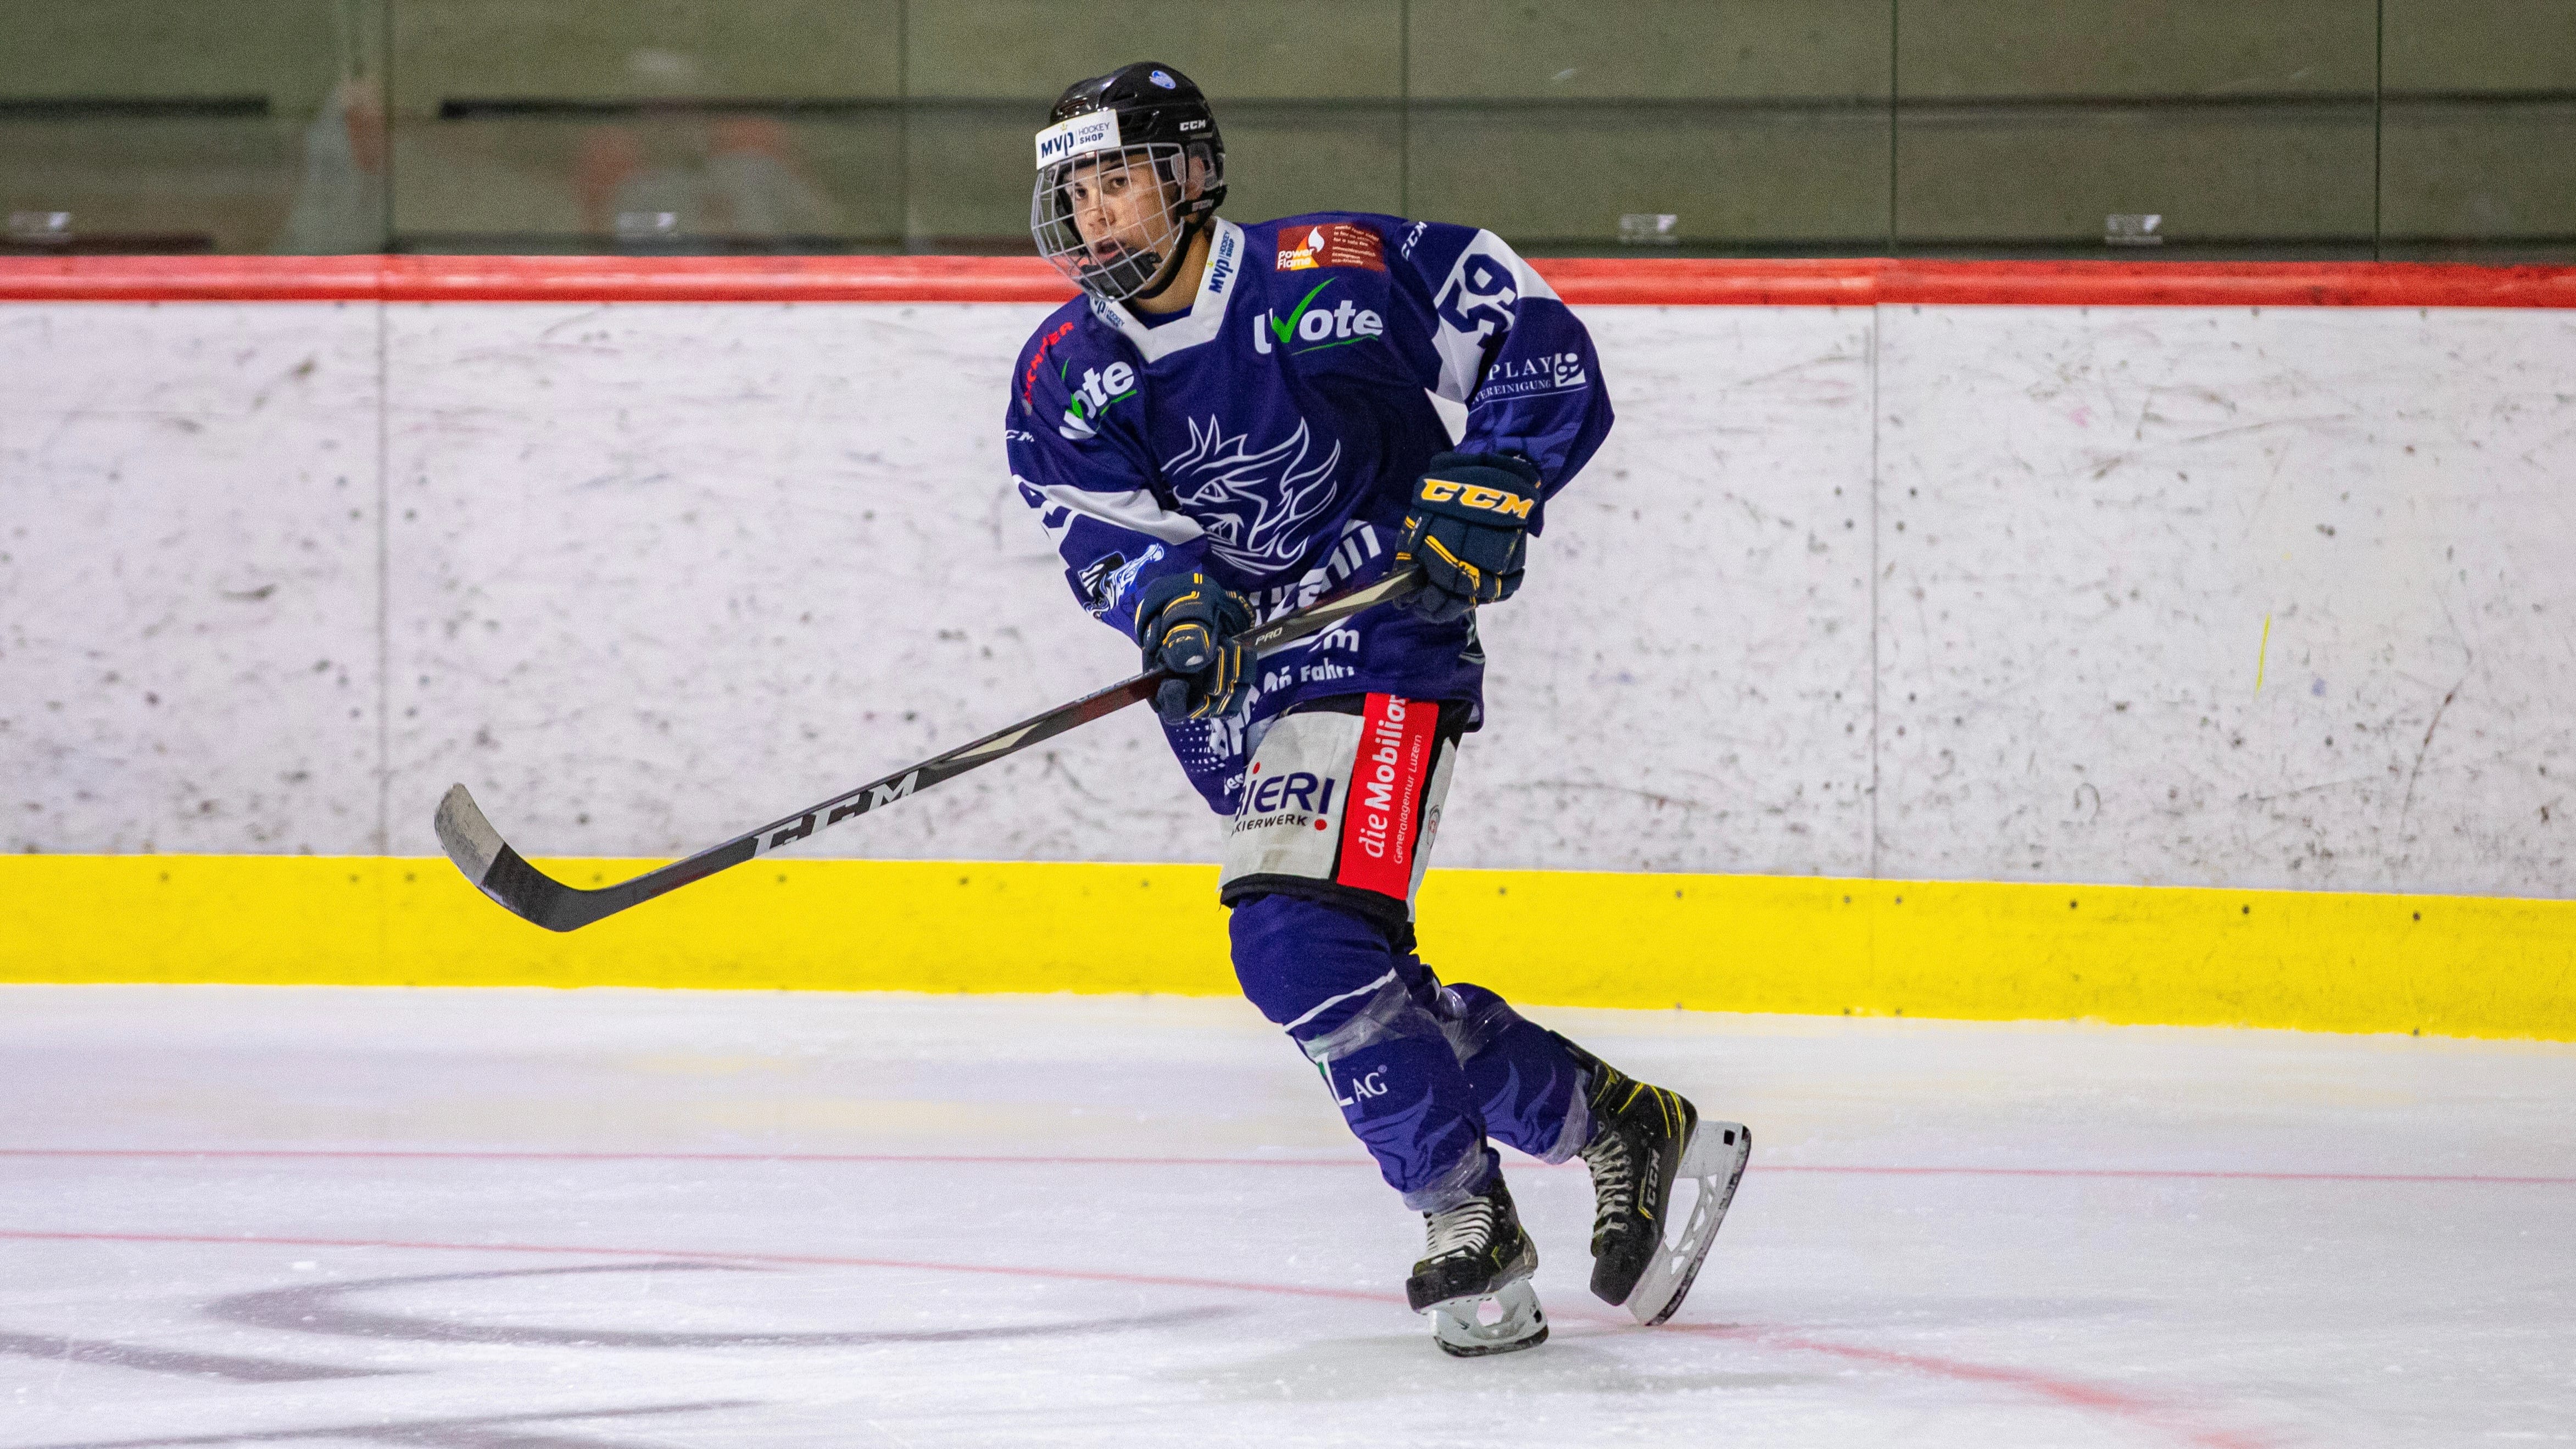 Nick im Einsatz für den Hockey Club Luzern.